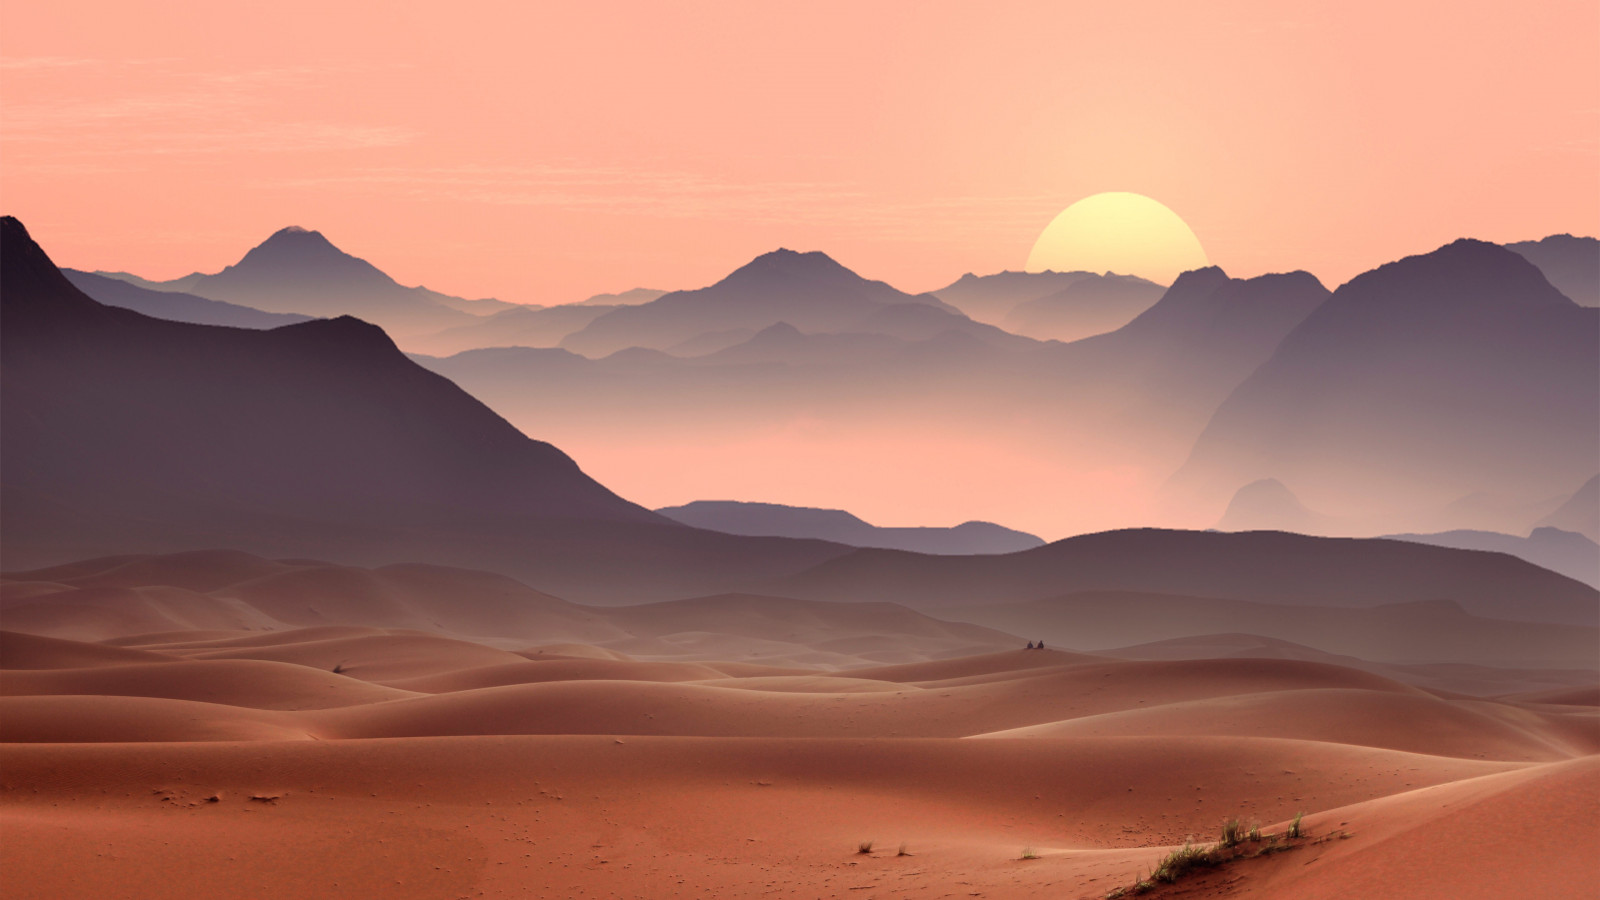 Sunset on the desert dunes wallpaper 1600x900